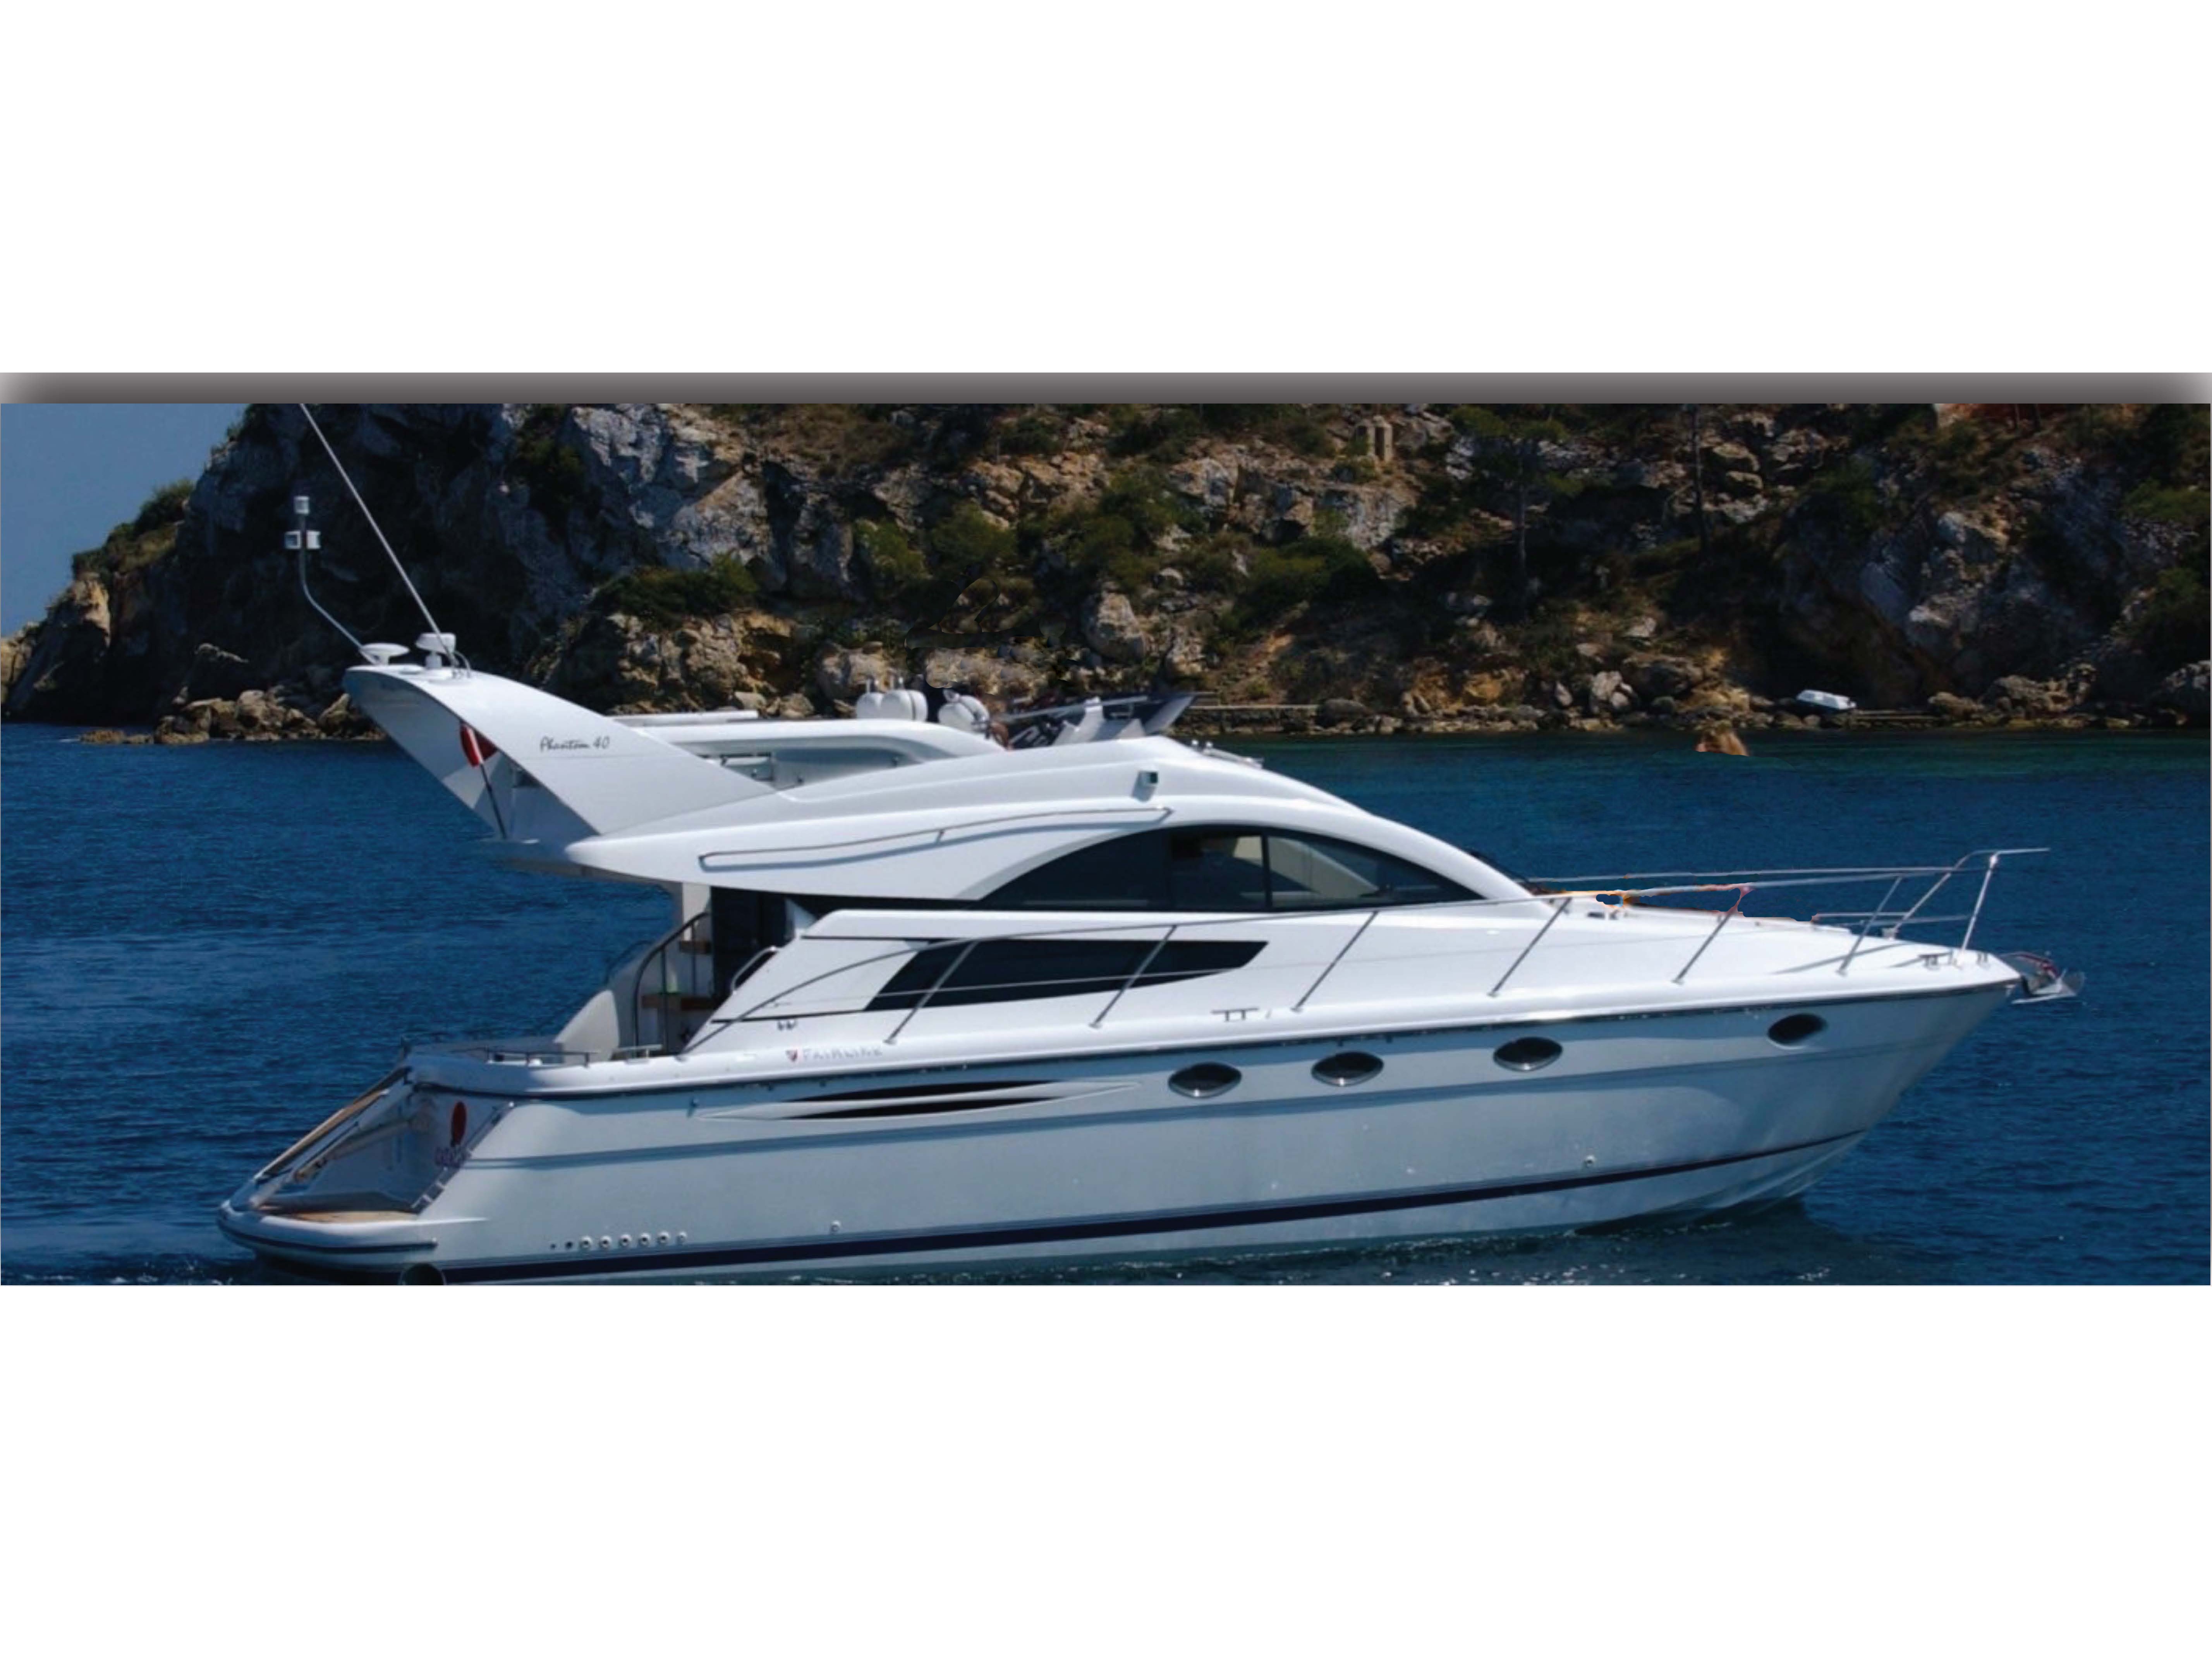 Phantom 43 - Motor Boat Charter Greece & Boat hire in Greece Cyclades Islands Mykonos Mykonos 2